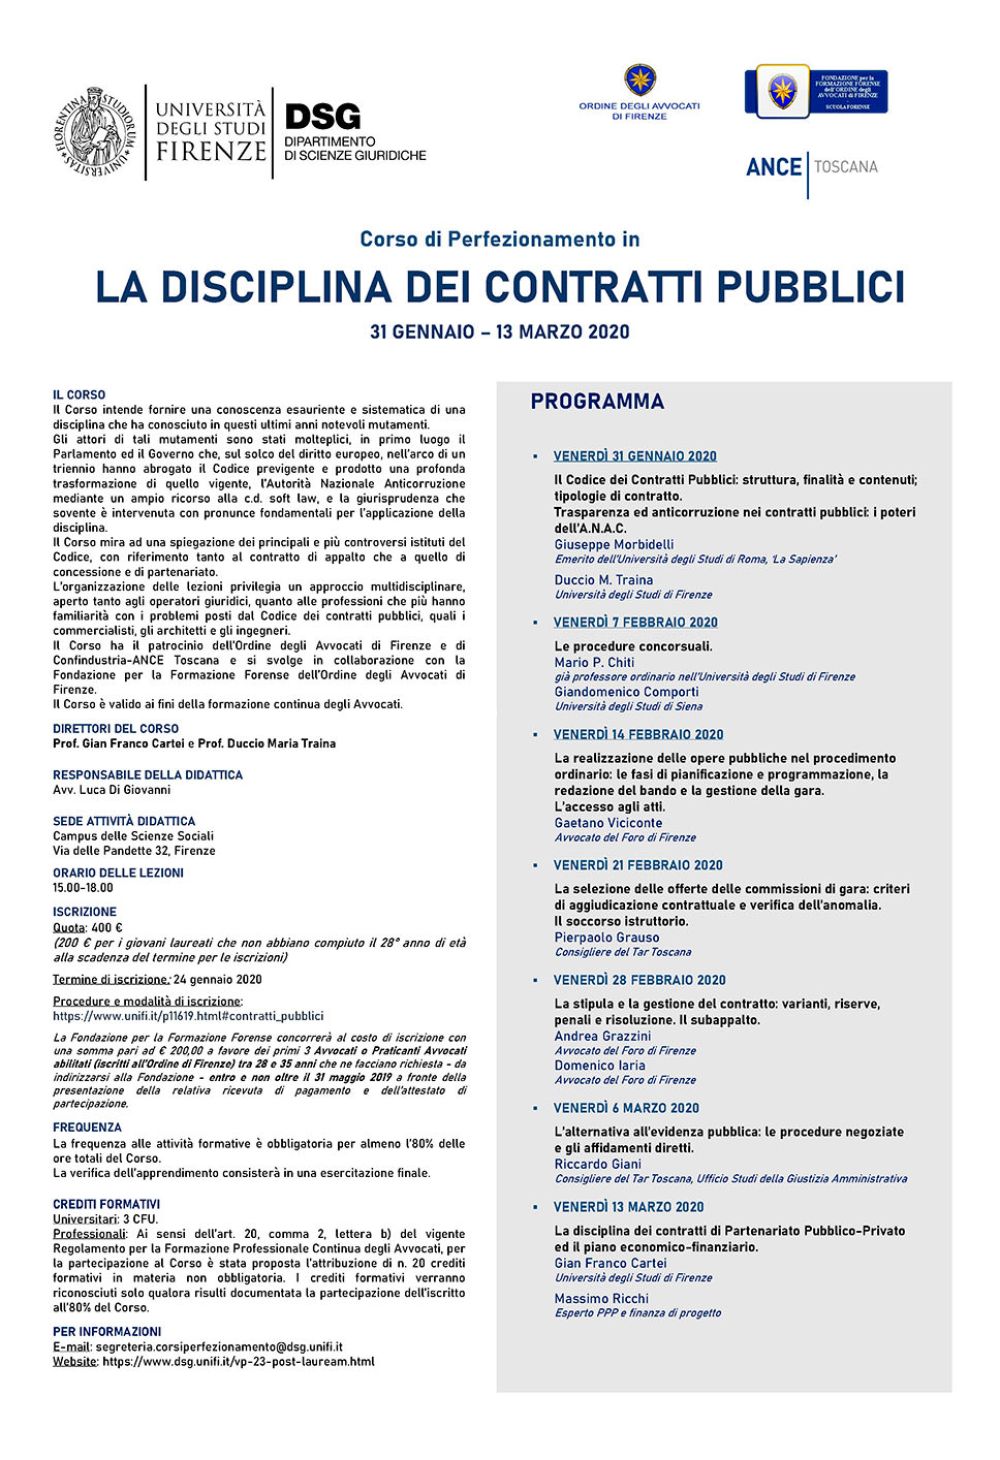 Locandina-contratti-pubblici-2020